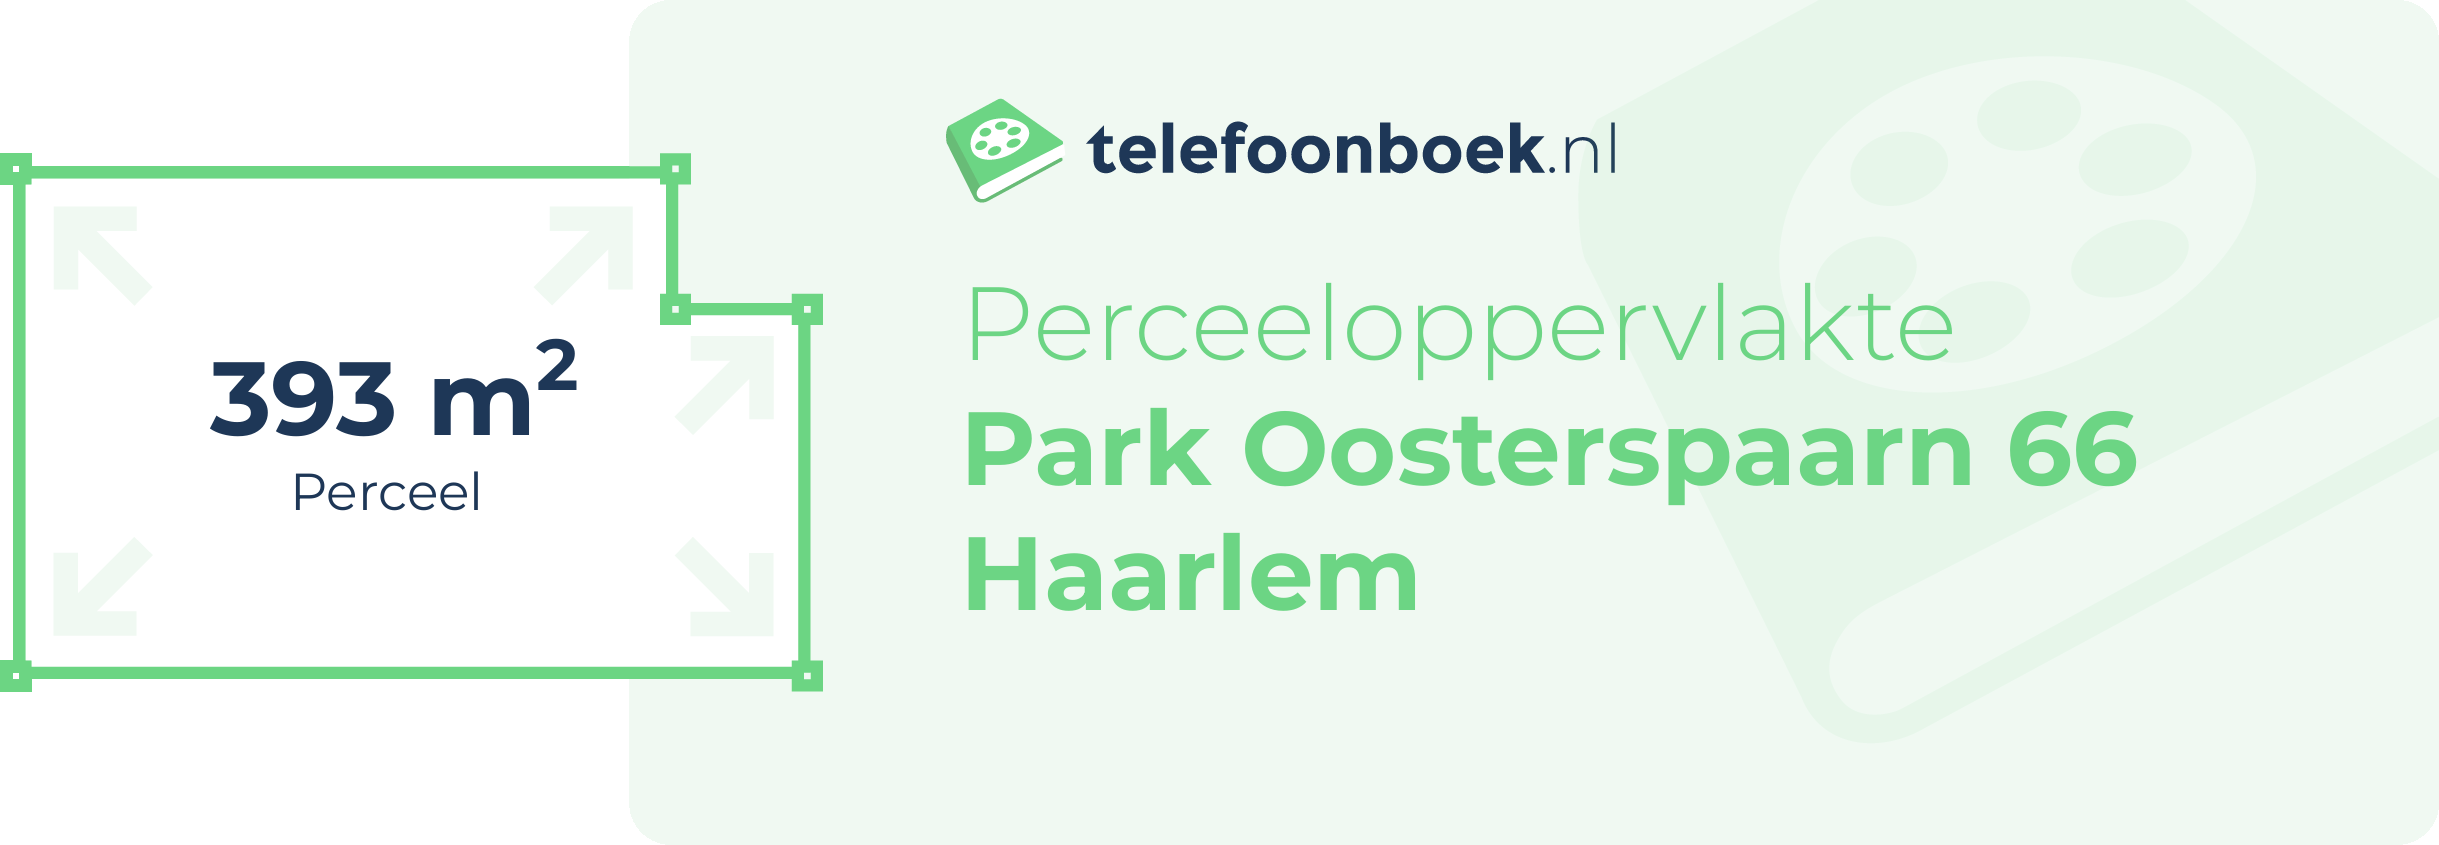 Perceeloppervlakte Park Oosterspaarn 66 Haarlem